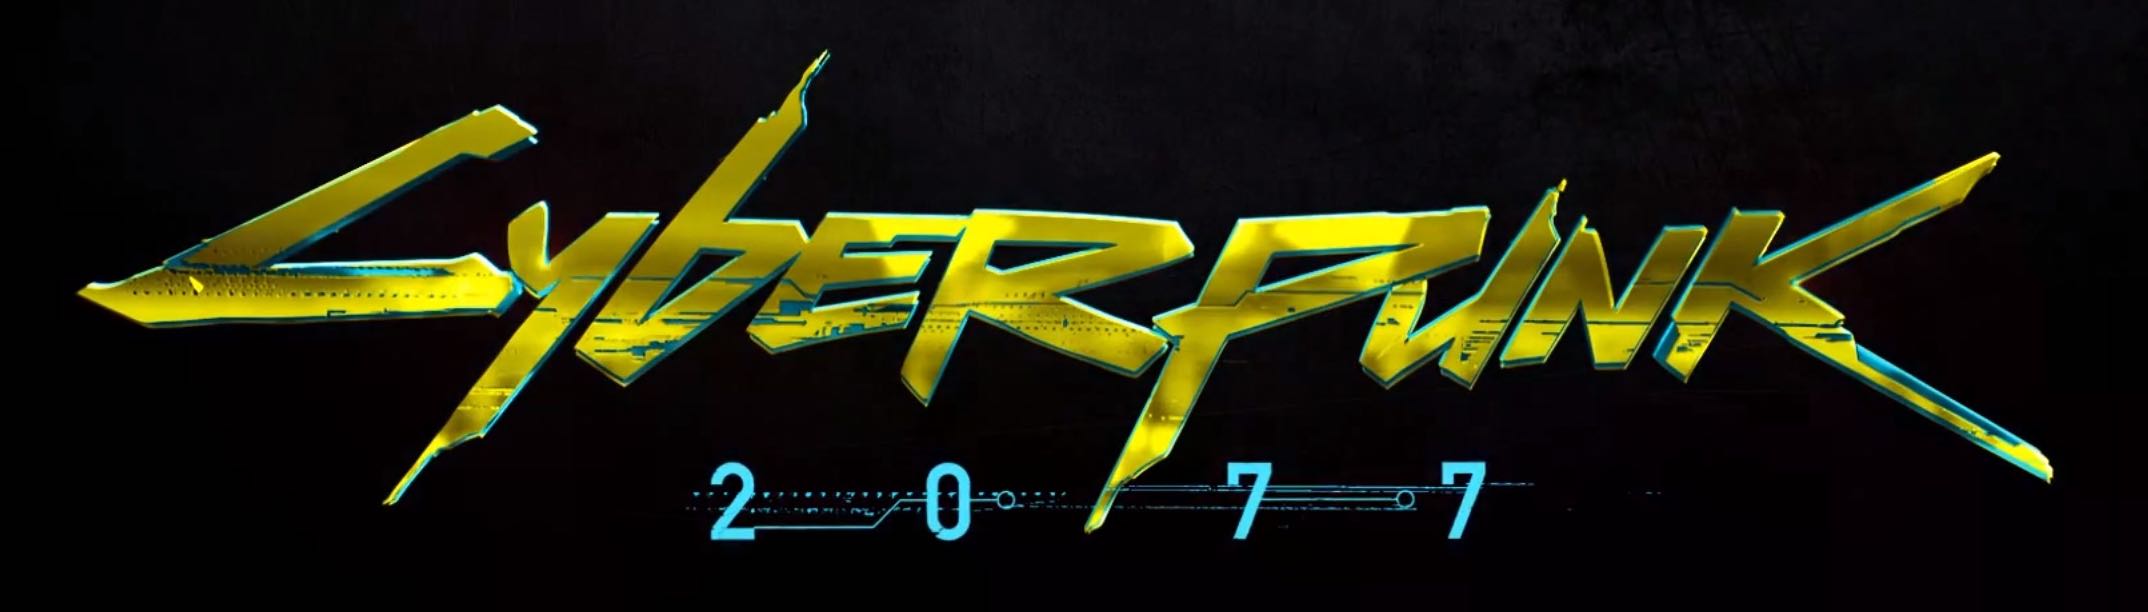 Cyberpunk numbers font фото 20